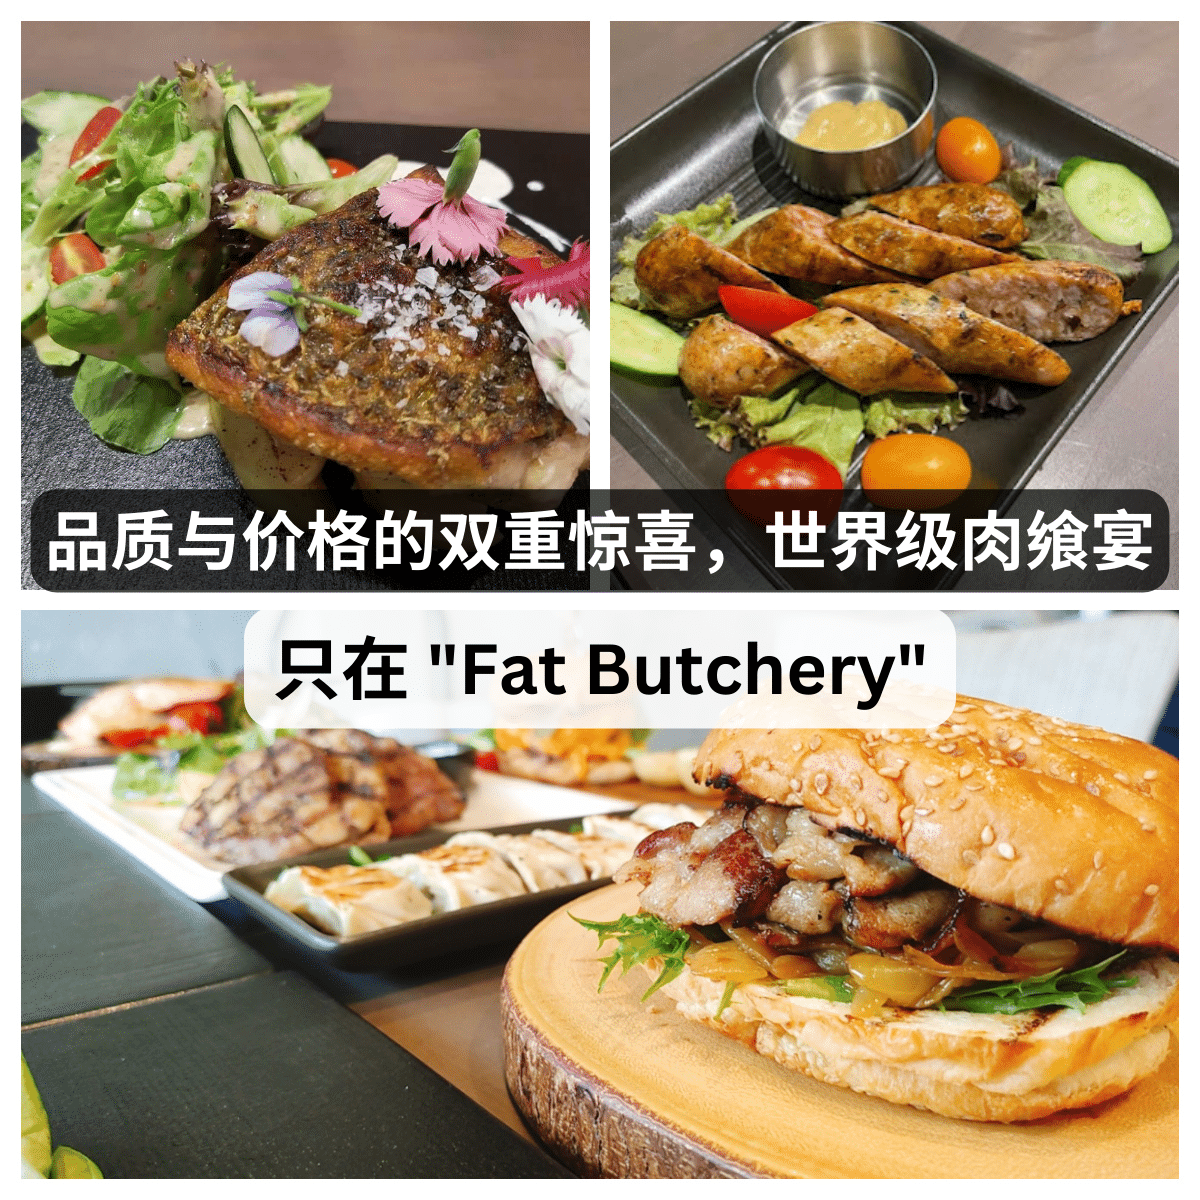 与众不同的美味，优惠的价格 – 只在” Fat Butchery “。全球顶级食材的终极盛宴！